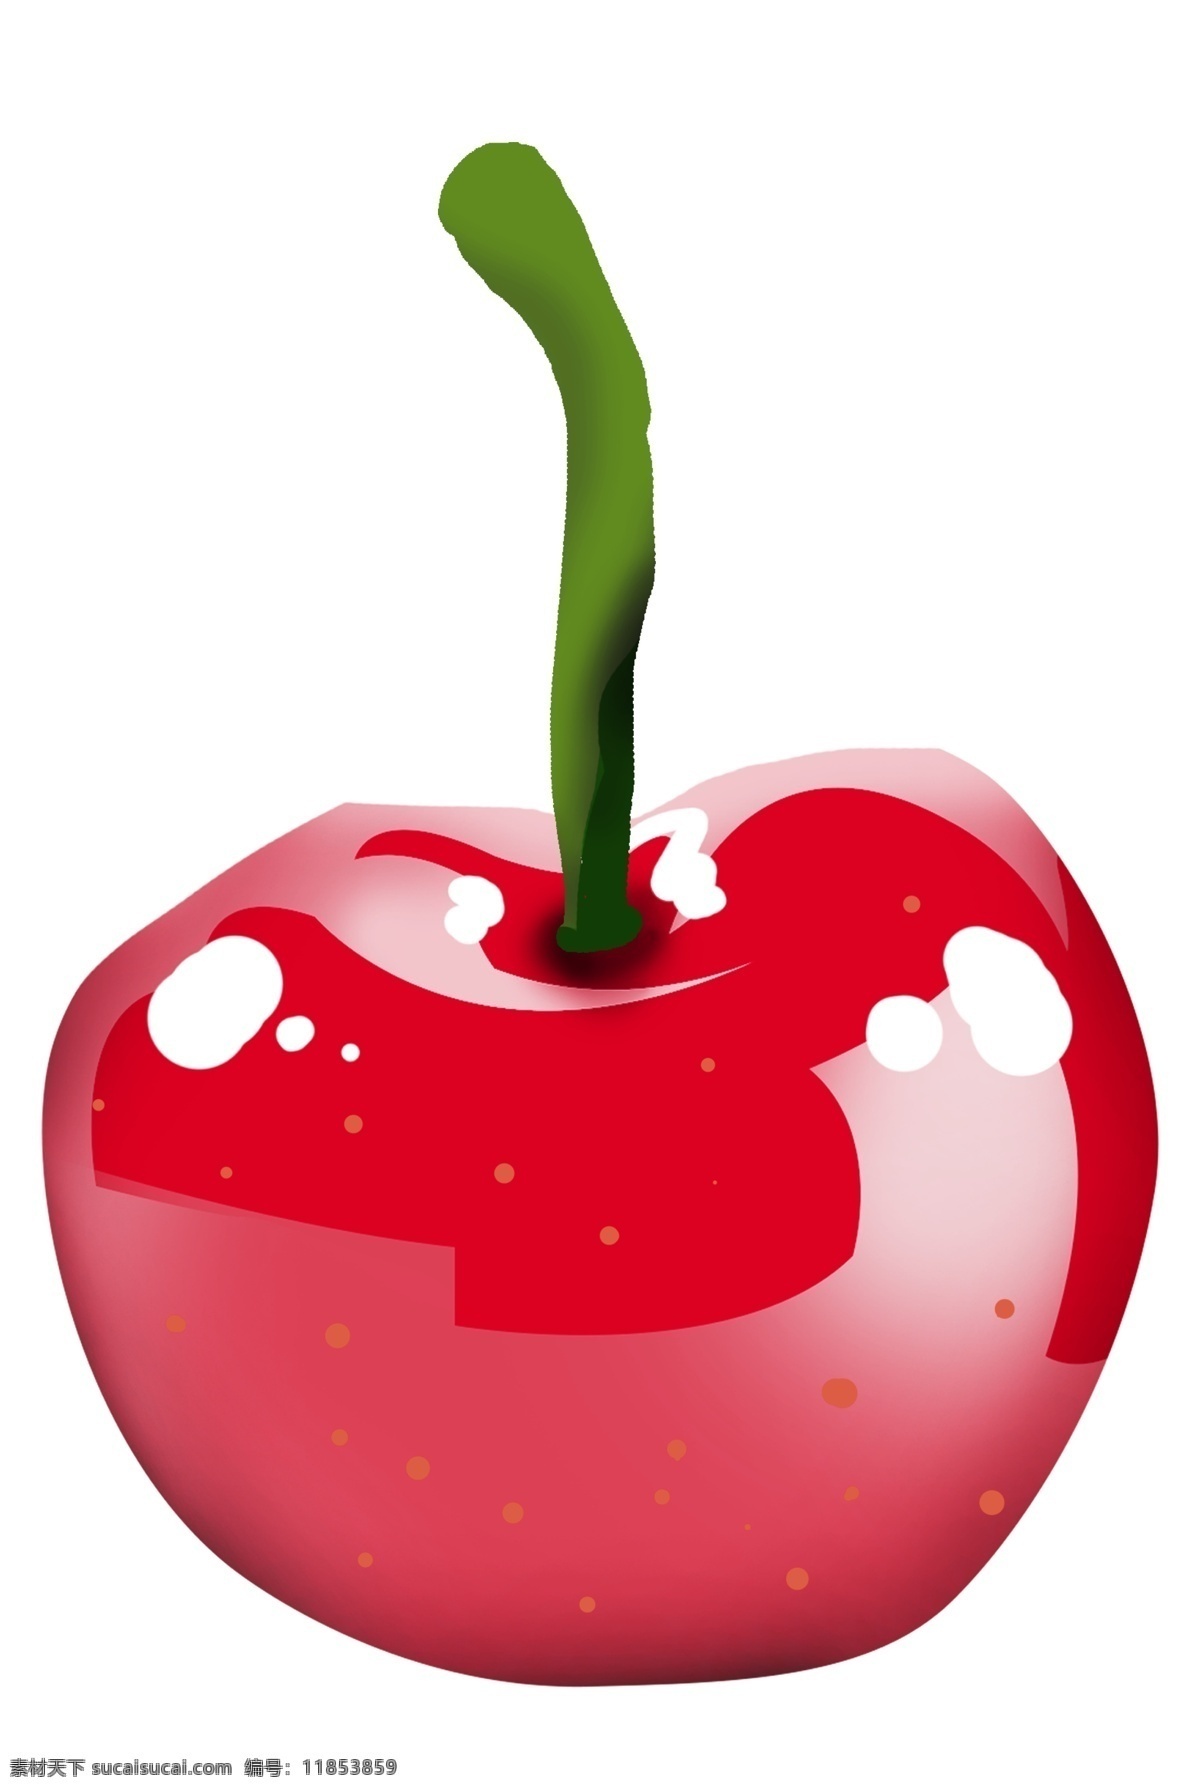 手绘 红色 樱桃 插画 手绘红色樱桃 美味的樱桃 卡通樱桃插画 美食 新鲜的樱桃 新鲜水果 食物插画